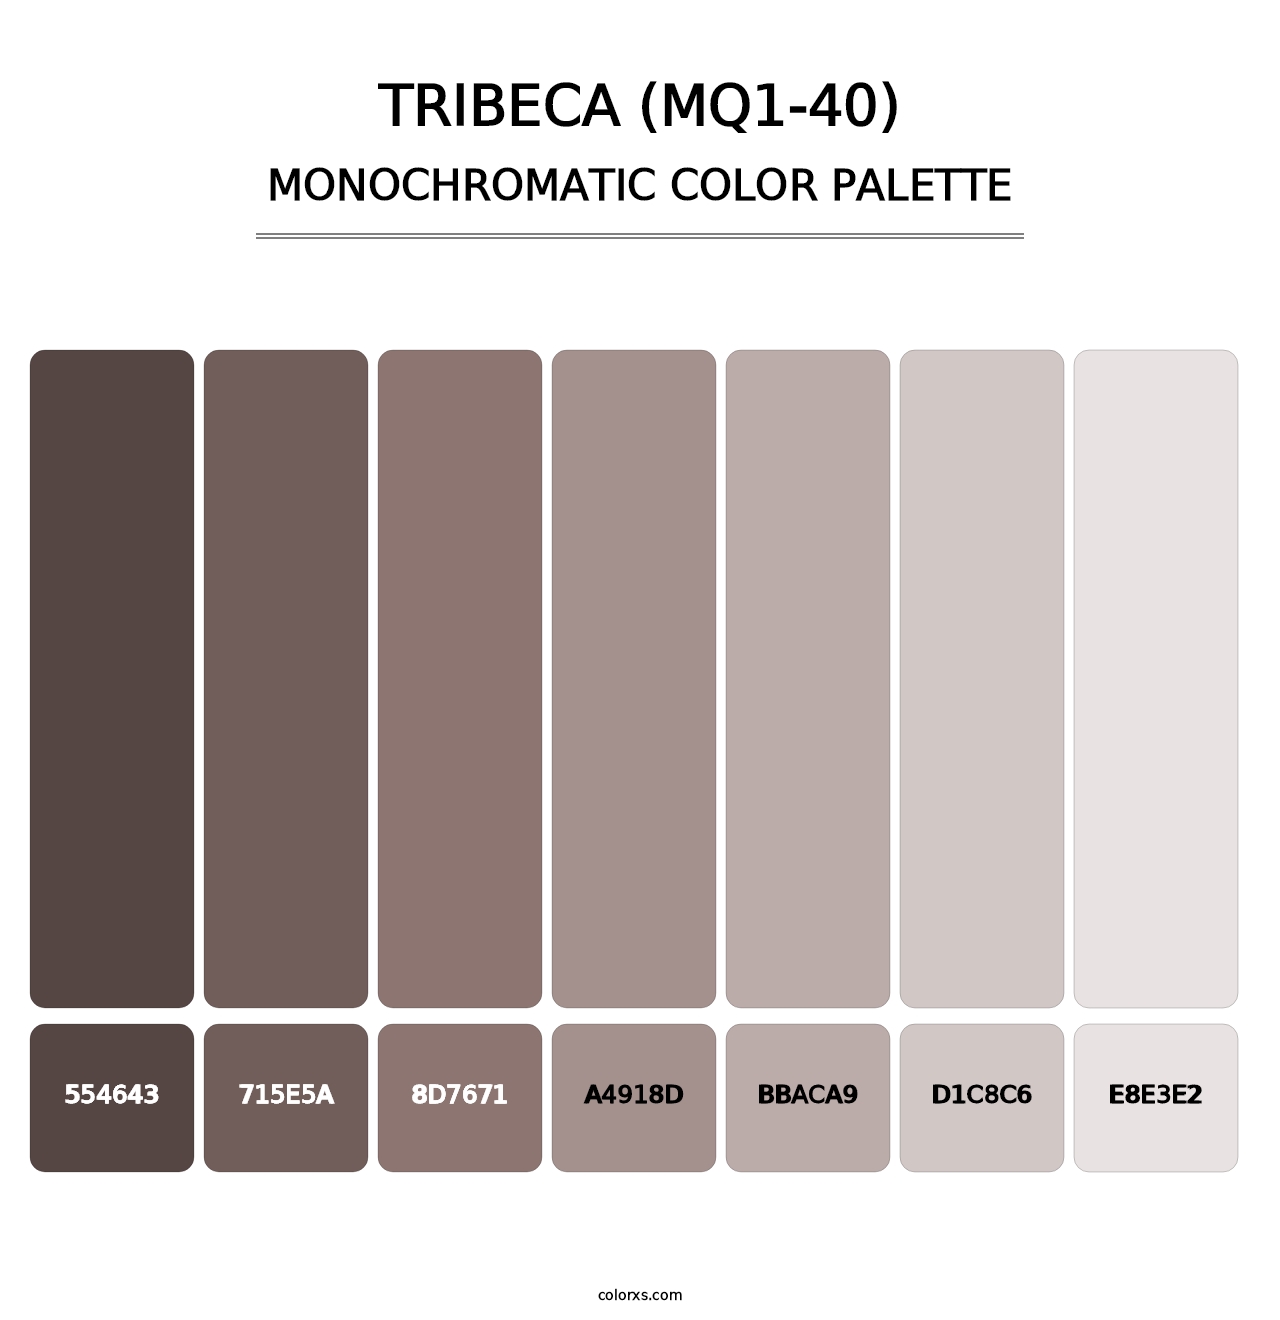 Tribeca (MQ1-40) - Monochromatic Color Palette